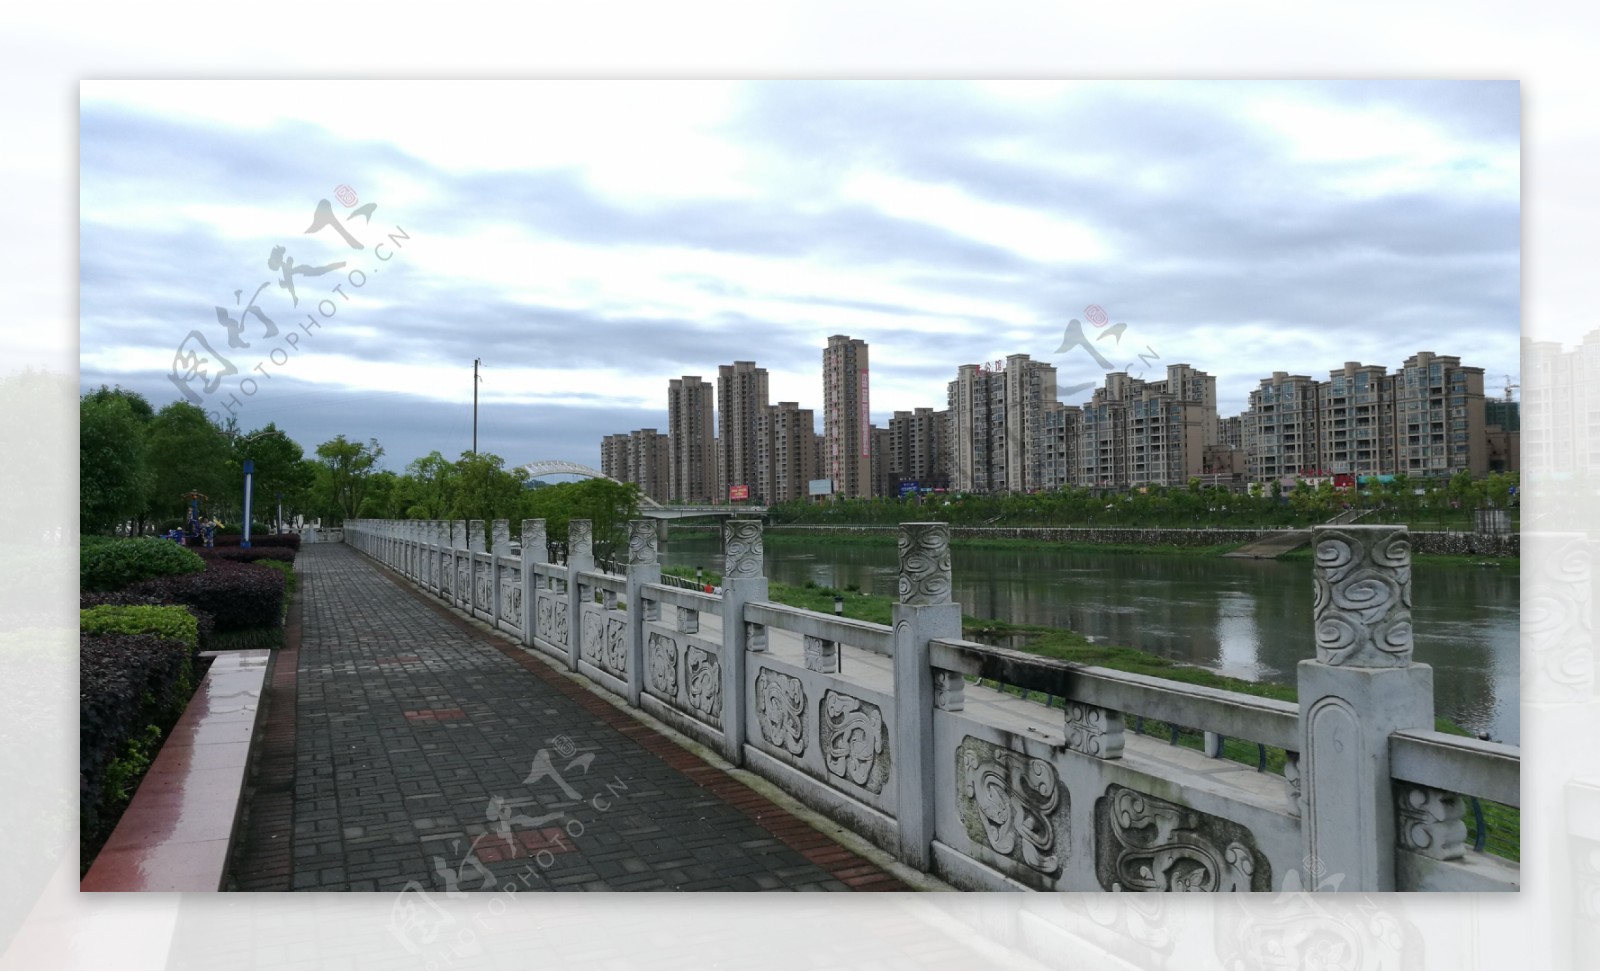 锦江河畔的石砌围栏